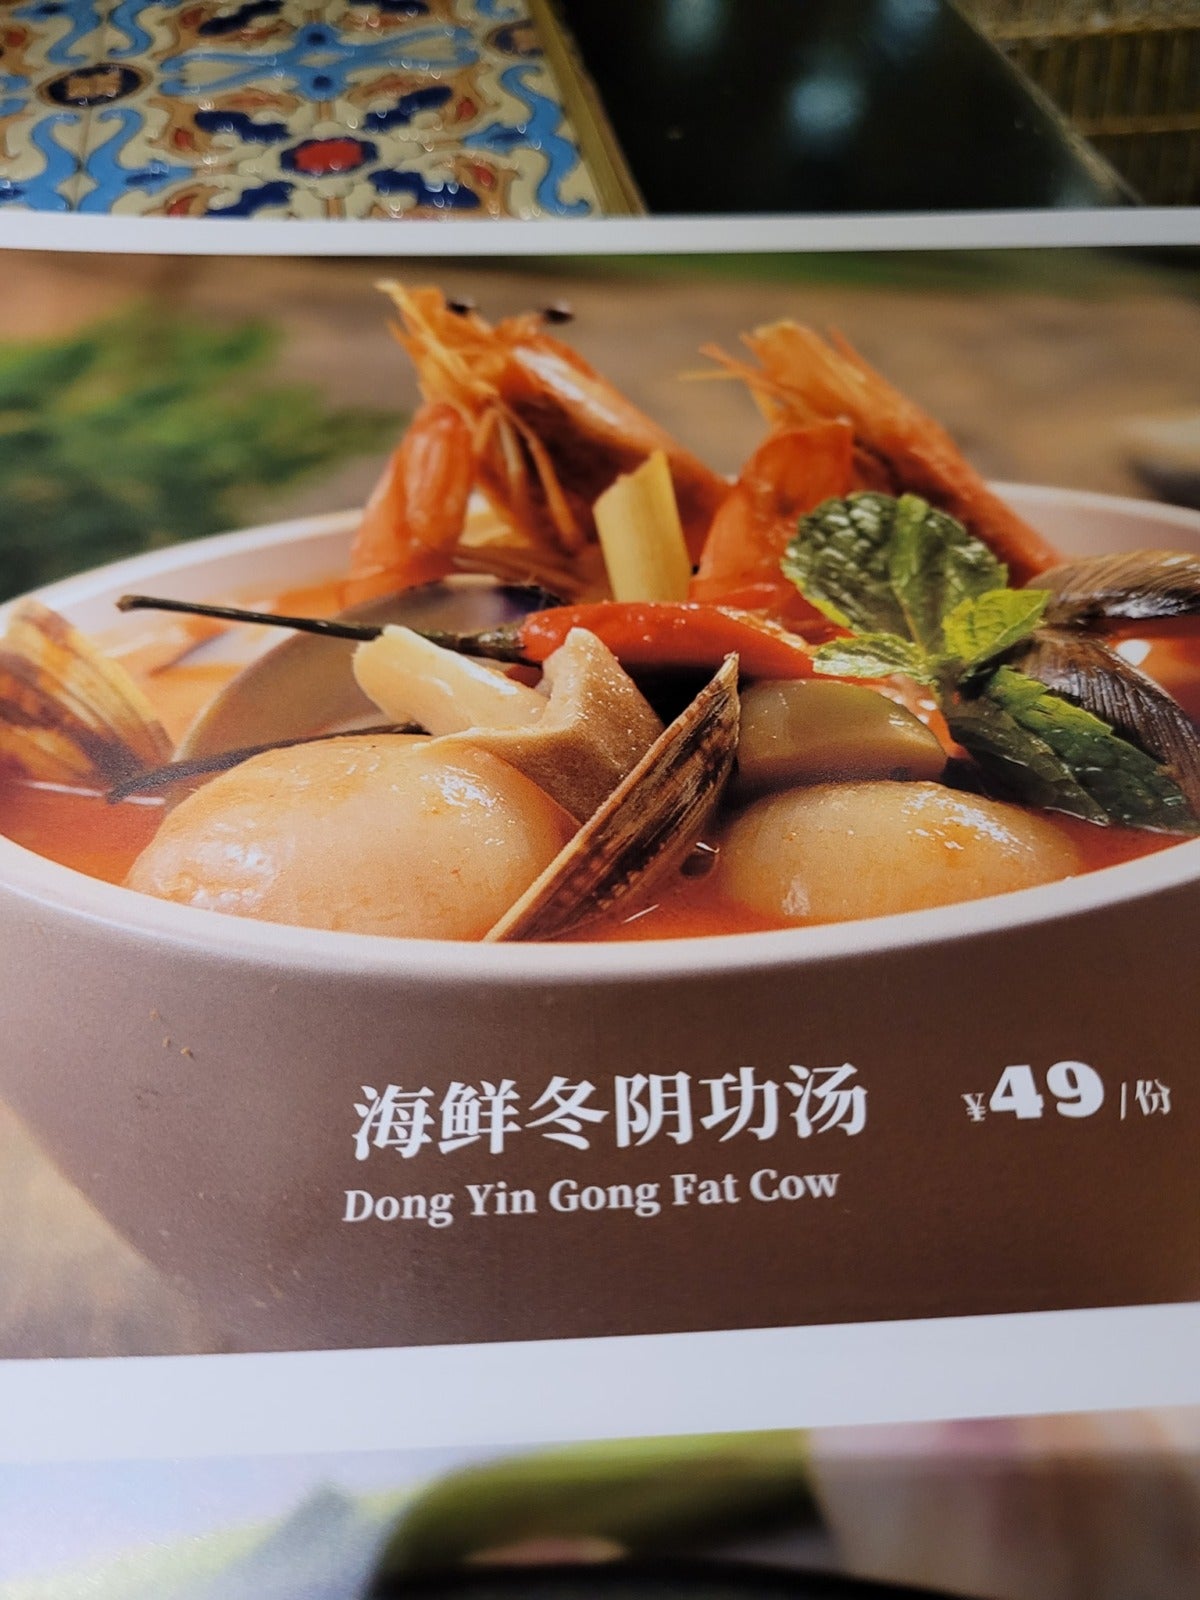 Restaurant In China Typo Translation 3